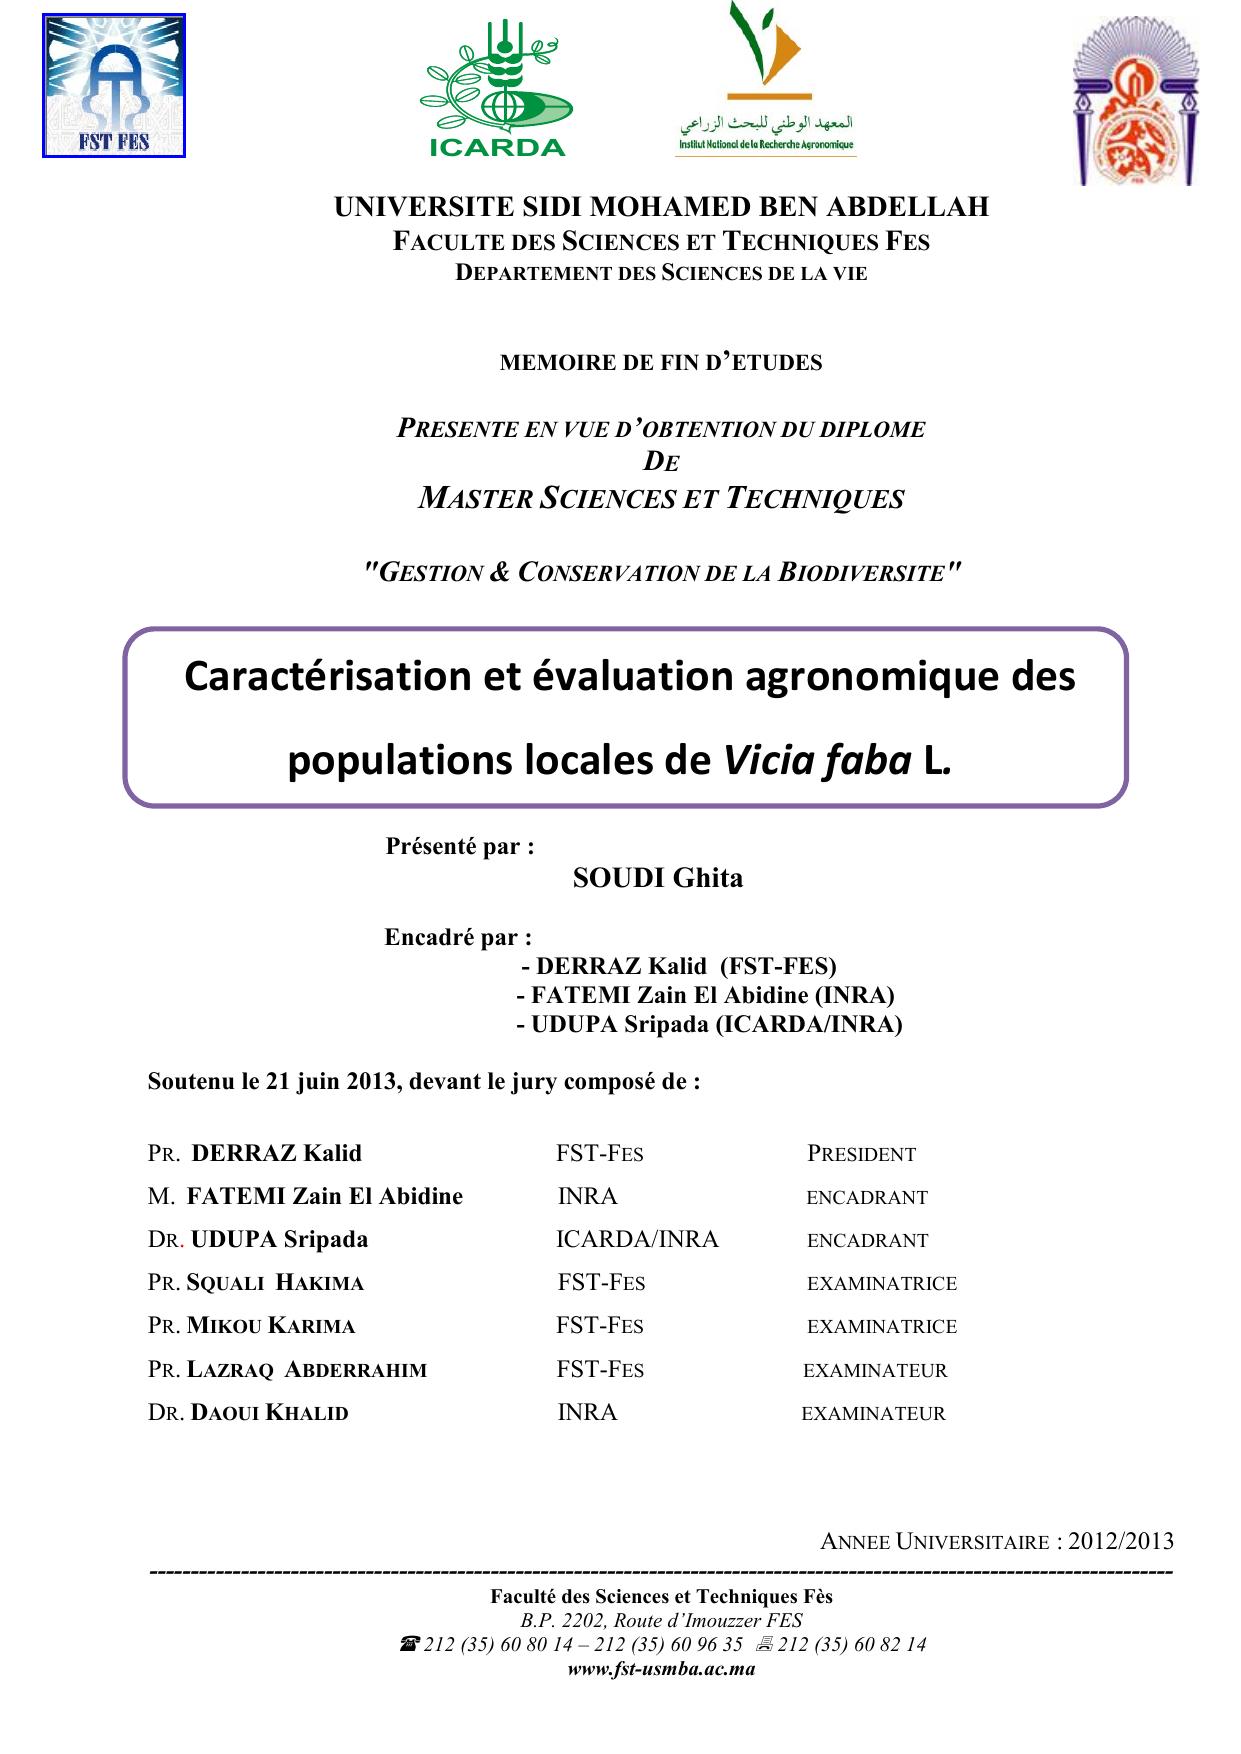 Caractérisation et évaluation agronomique des populations locales de Vicia faba L.